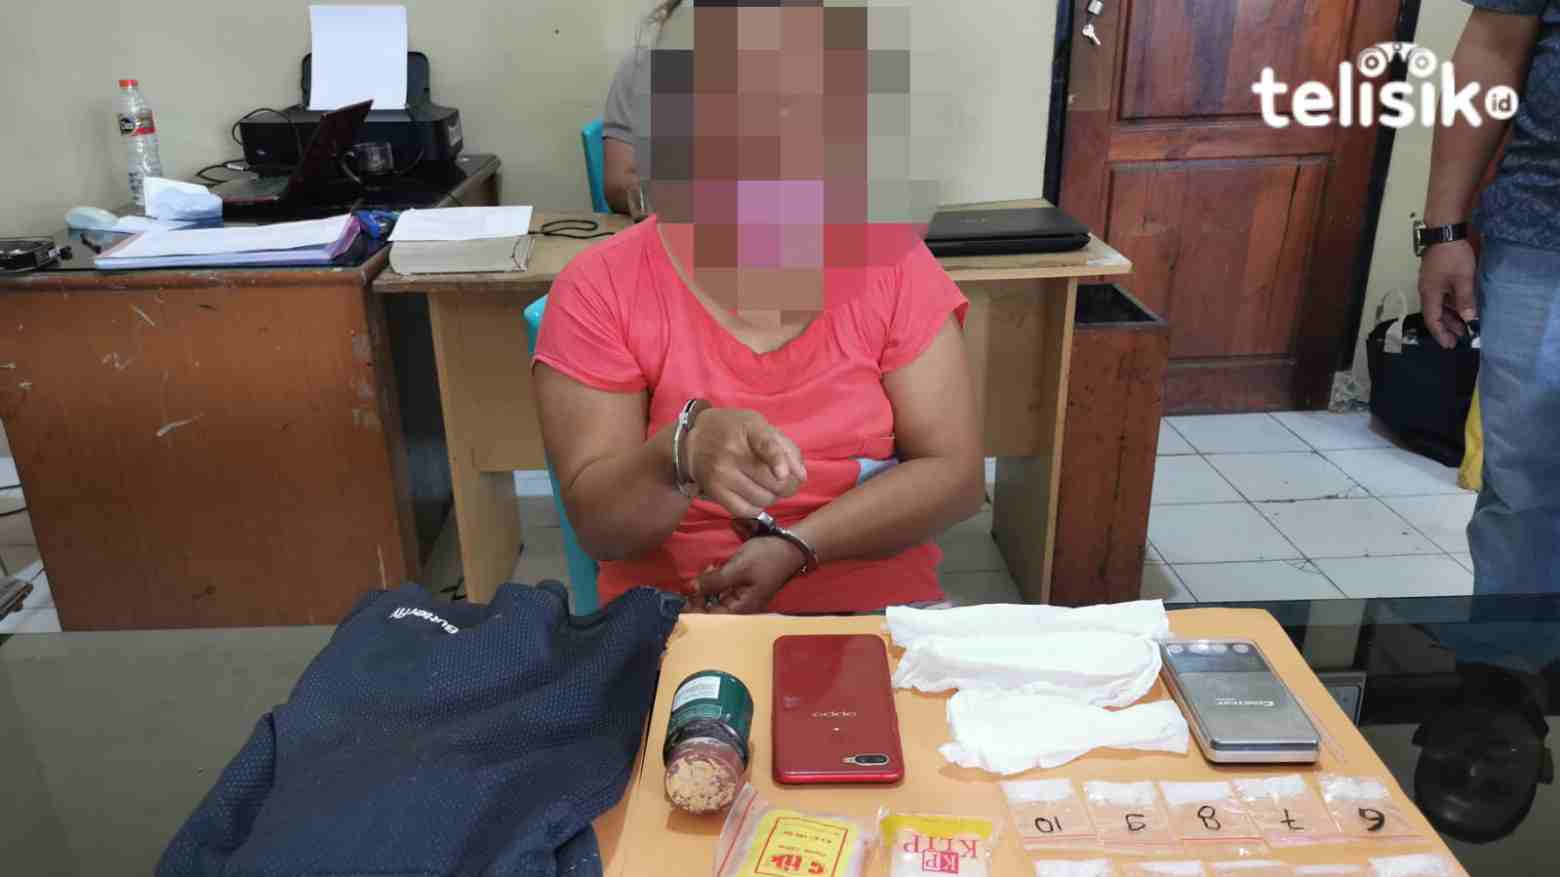 Polisi Temukan 10 Saset Sabu di Tangan Seorang Wanita